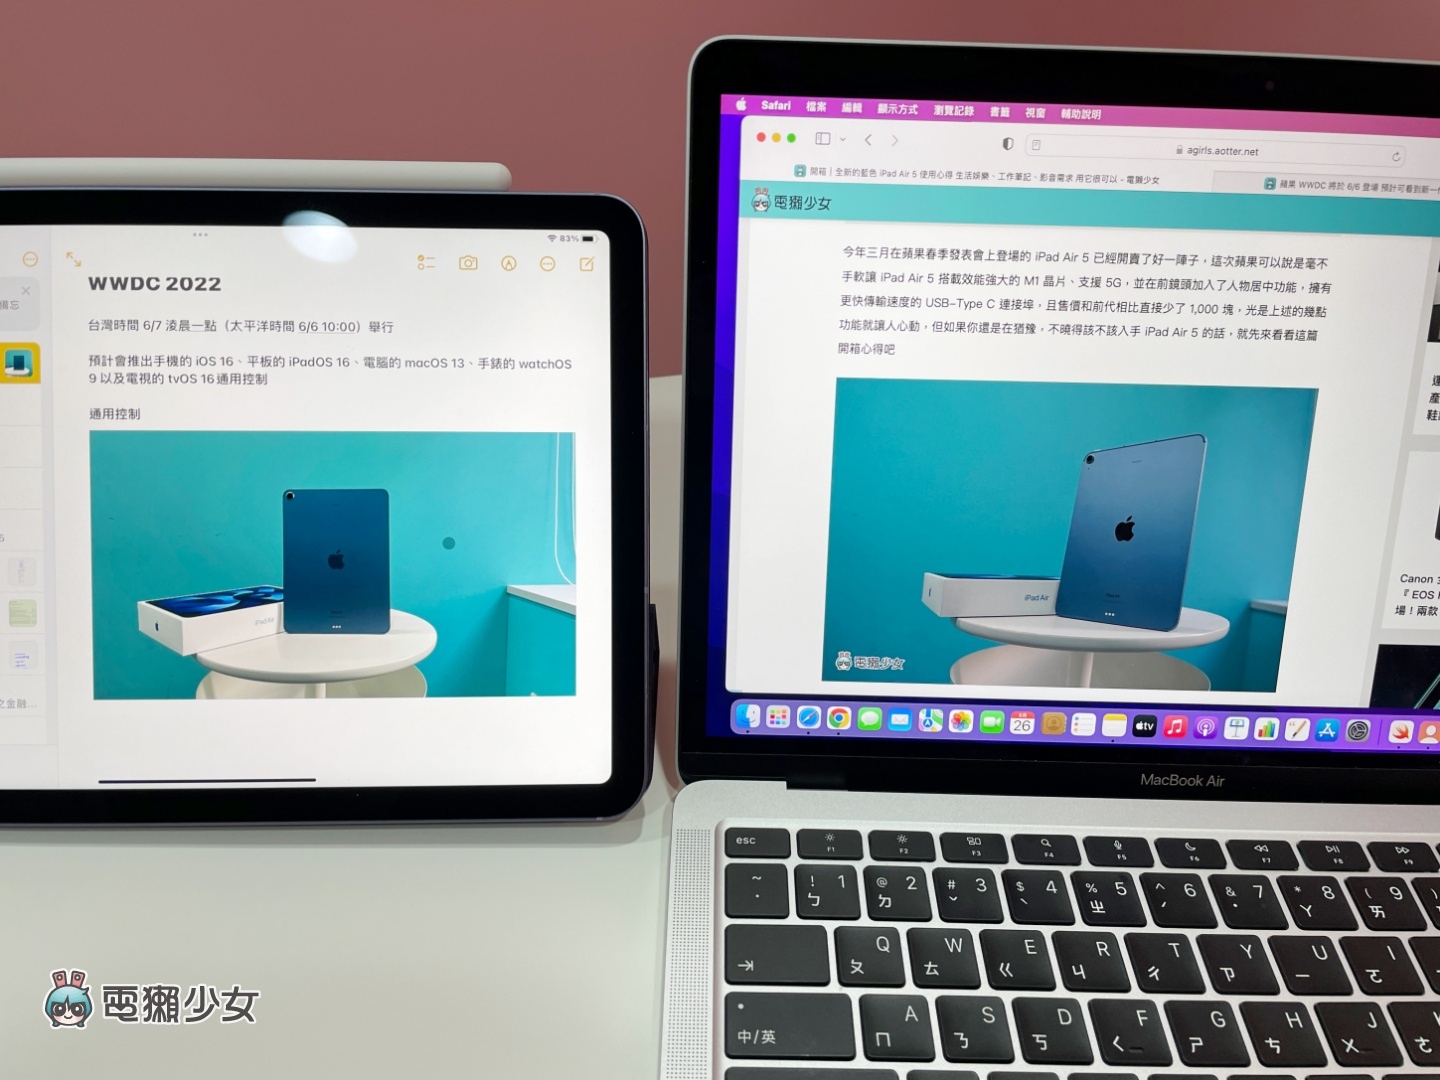 教學｜蘋果『 通用控制 』功能你用過了嗎？輕鬆在 Mac 和 iPad 間切換、打字、移動文件和檔案